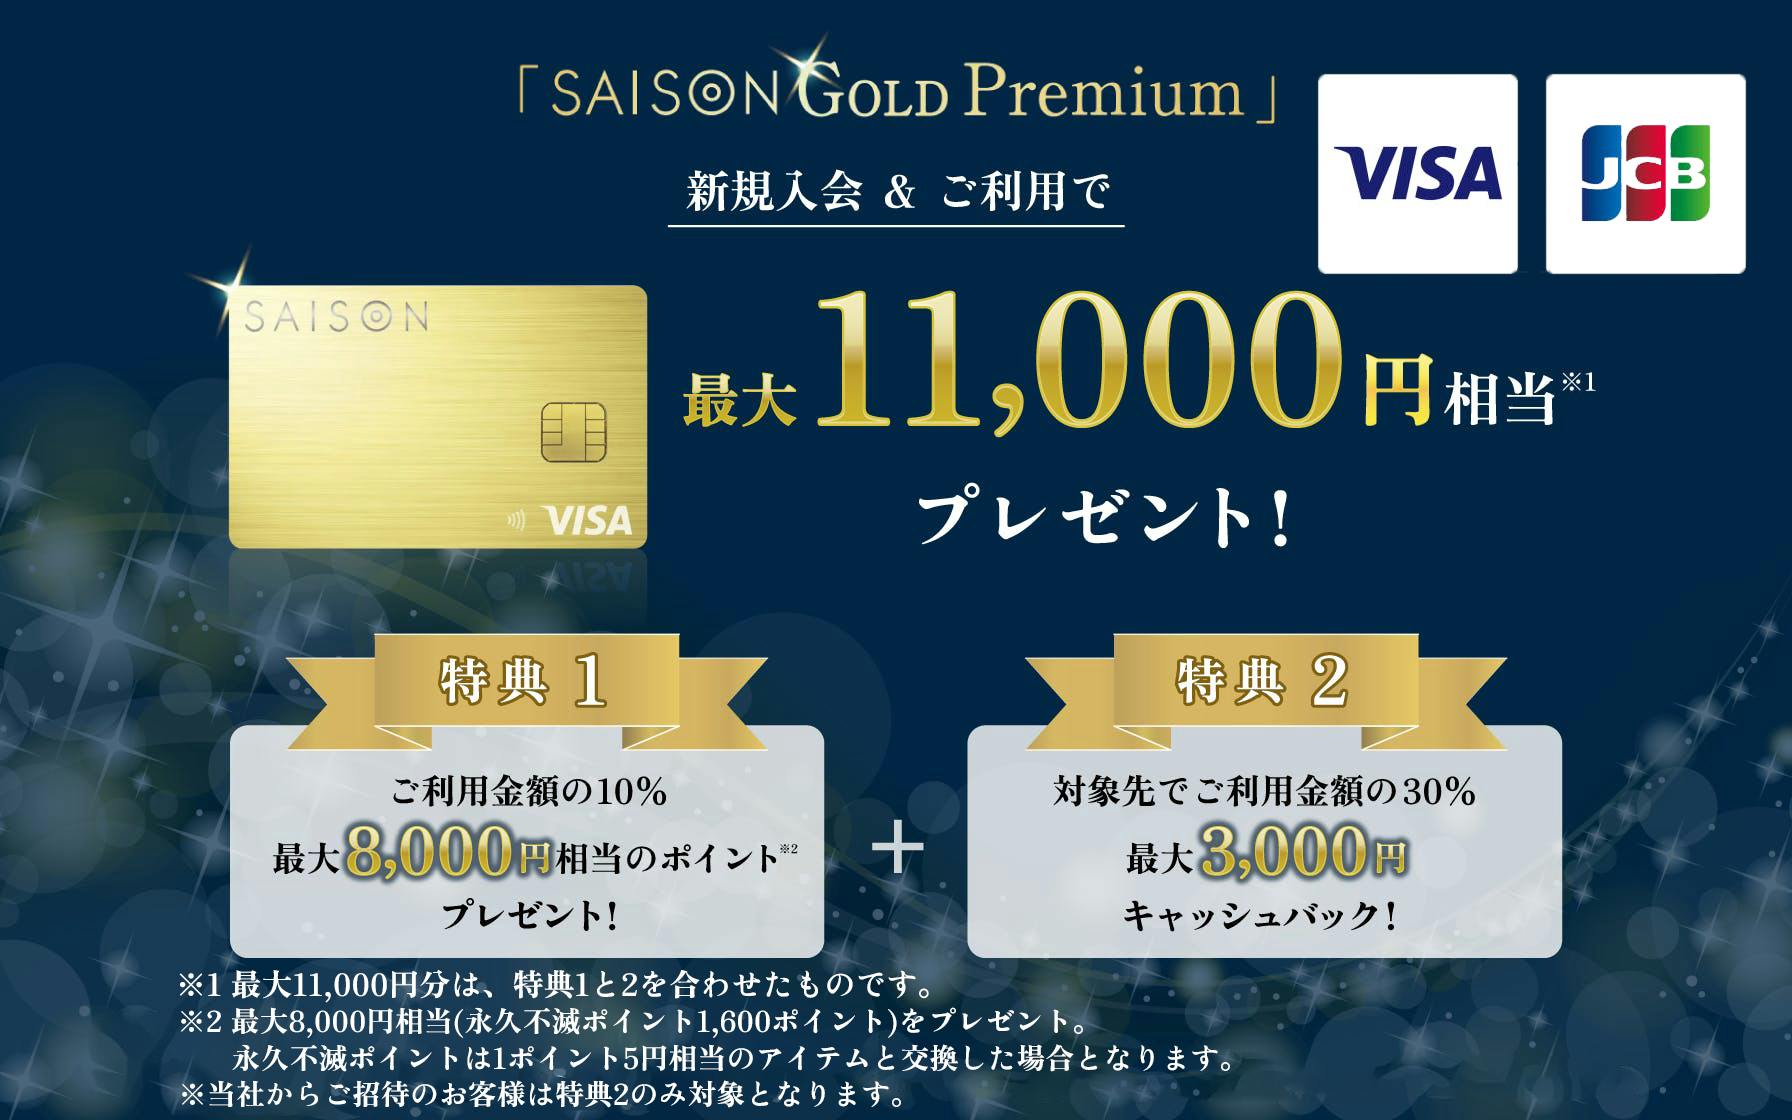 【新規入会キャンペーン】SAISON GOLD Premium Visa・JCBブランドをお選びの方最大11,000円相当 プレゼント